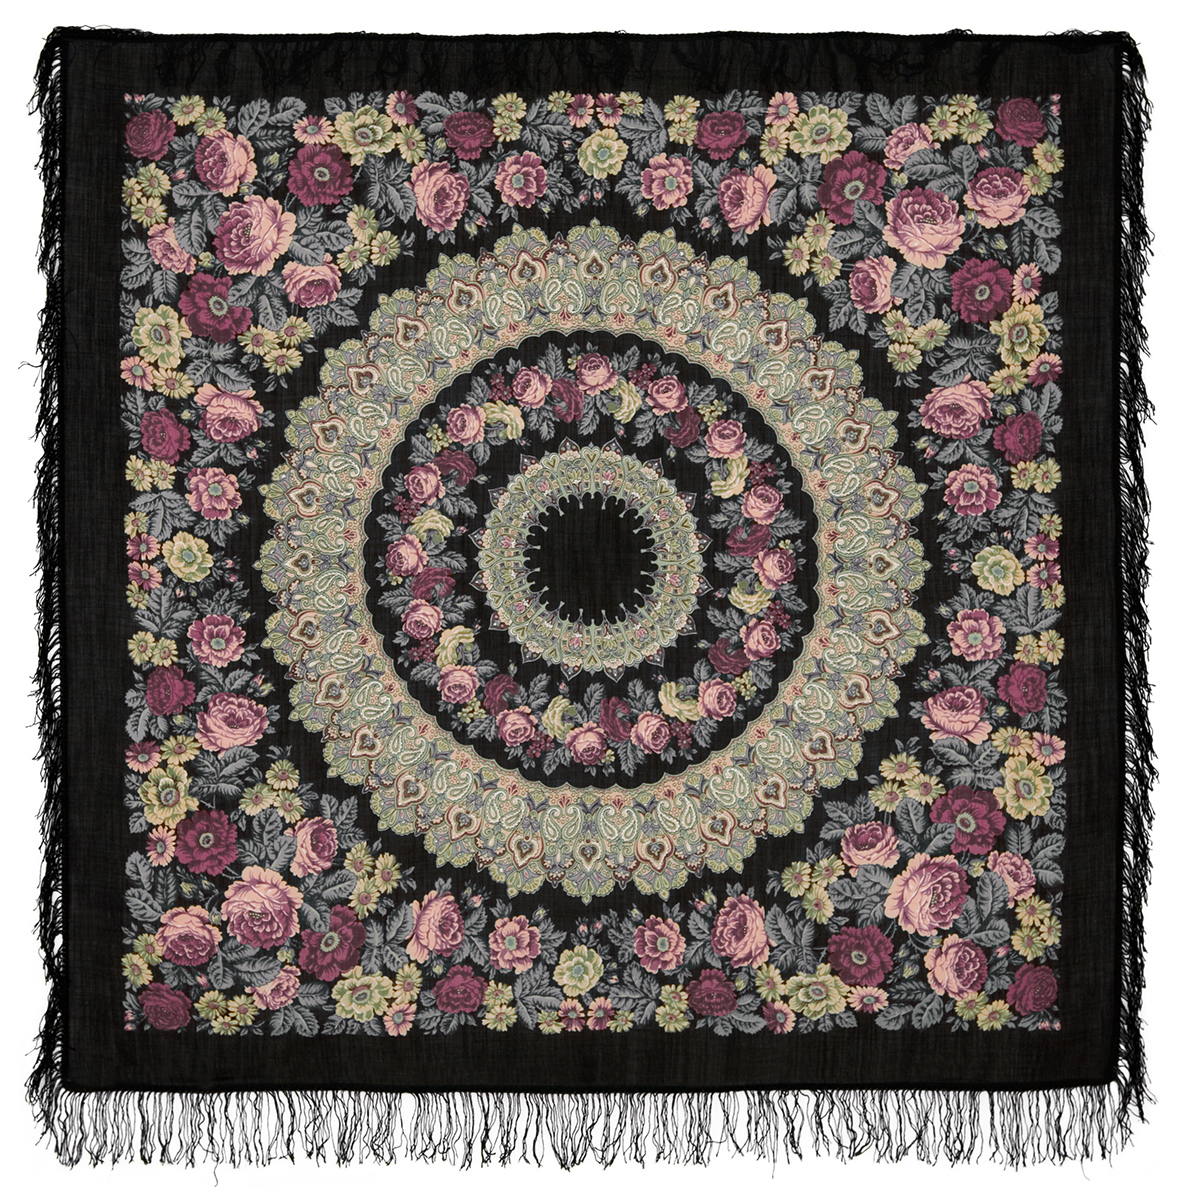 Платок женский Павловопосадский платок 353 черный/розовый/зеленый, 146х146 см